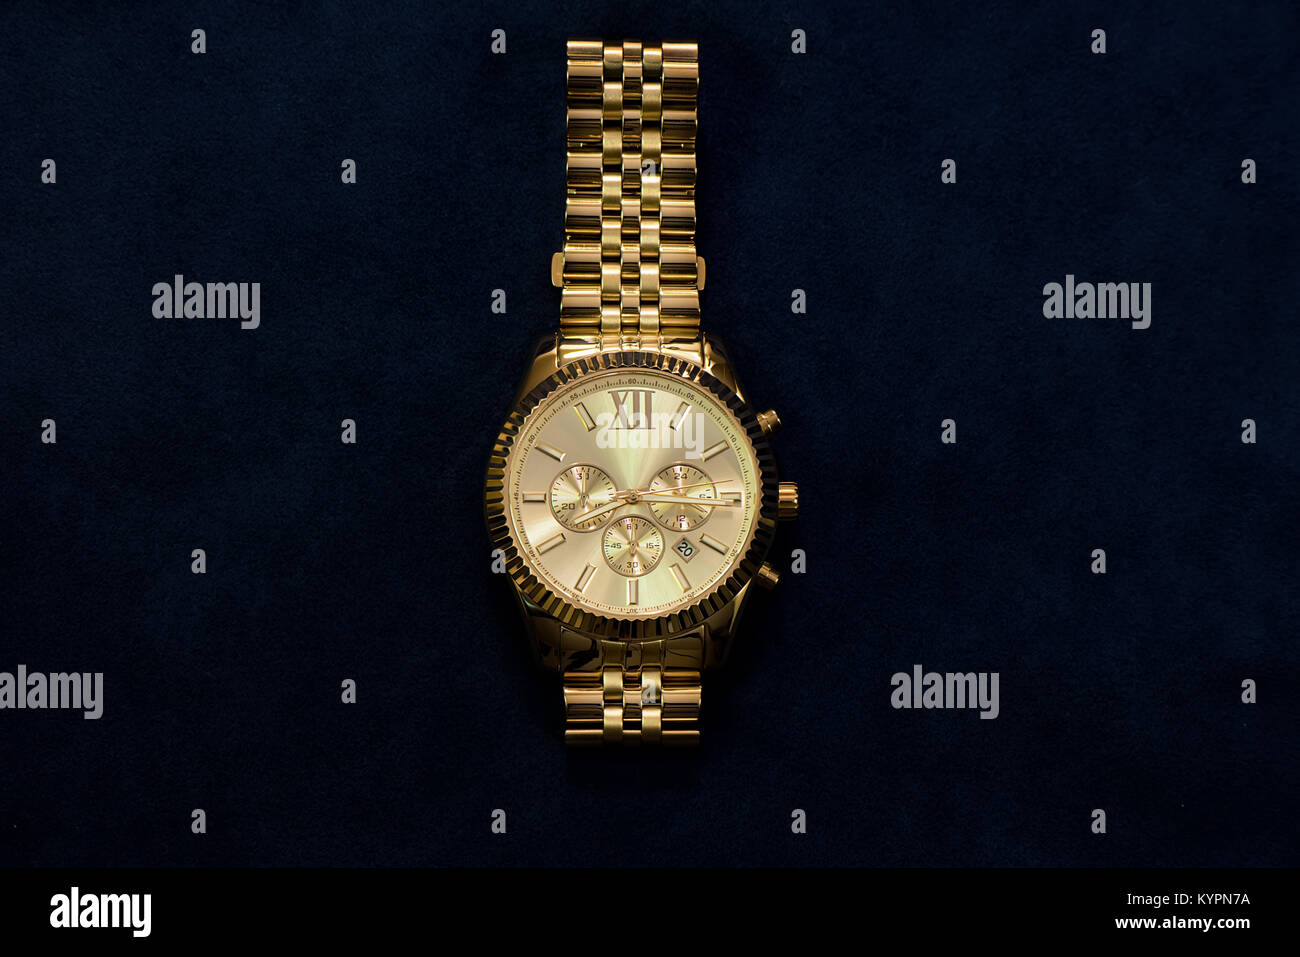 Gold Armbanduhr mit einem gelben Metall Armband auf dunkelblauem Hintergrund, separat Stockfoto